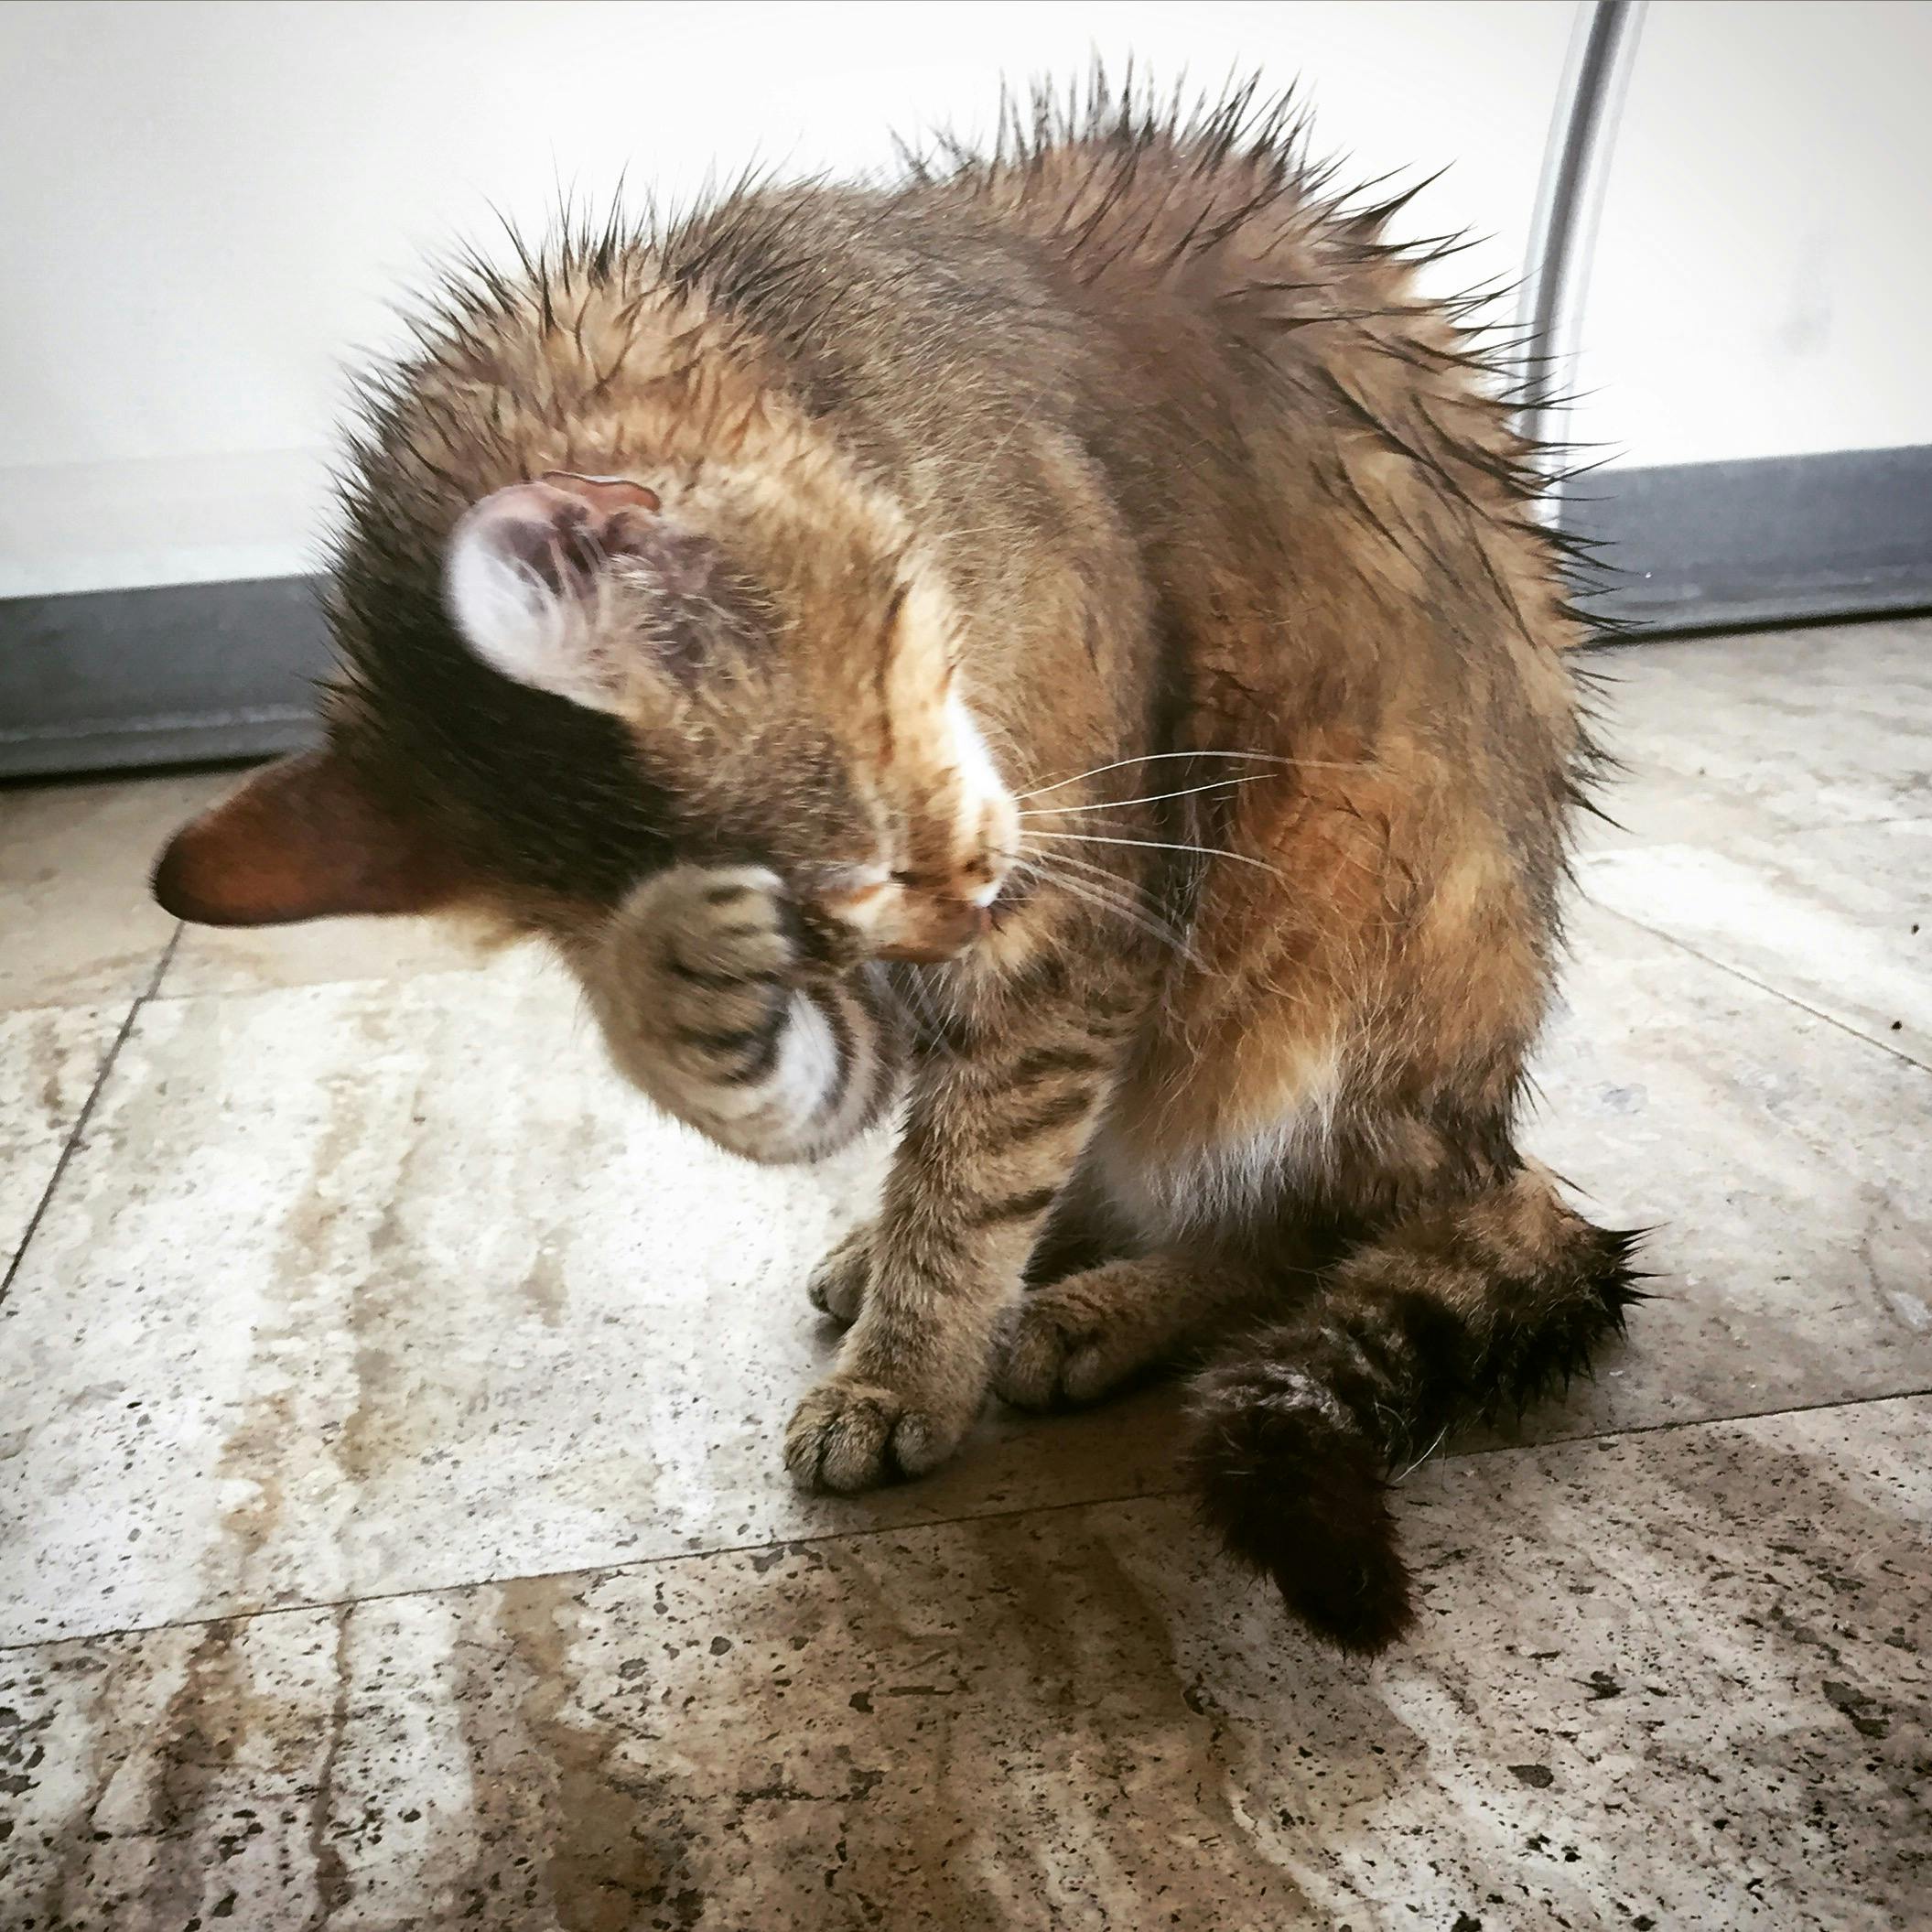 shampoing pour chaton